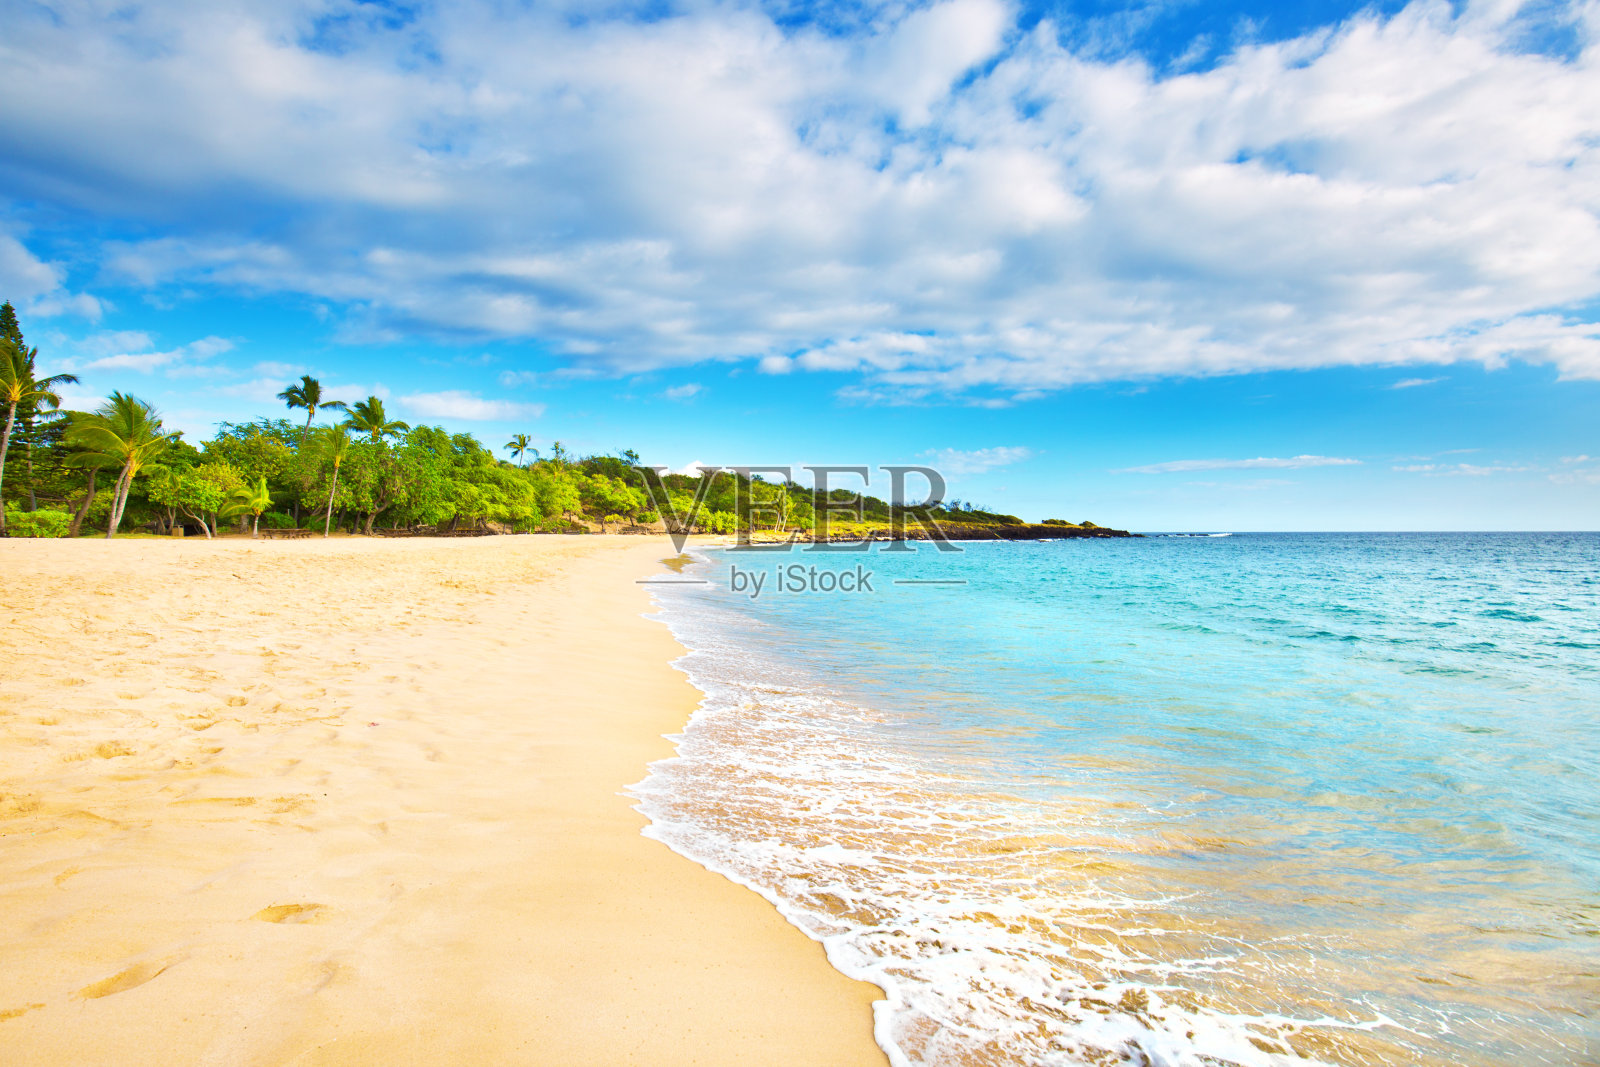 到夏威夷尽览各色海滩 - 走遍中国旅游网 走遍世界 情之旅